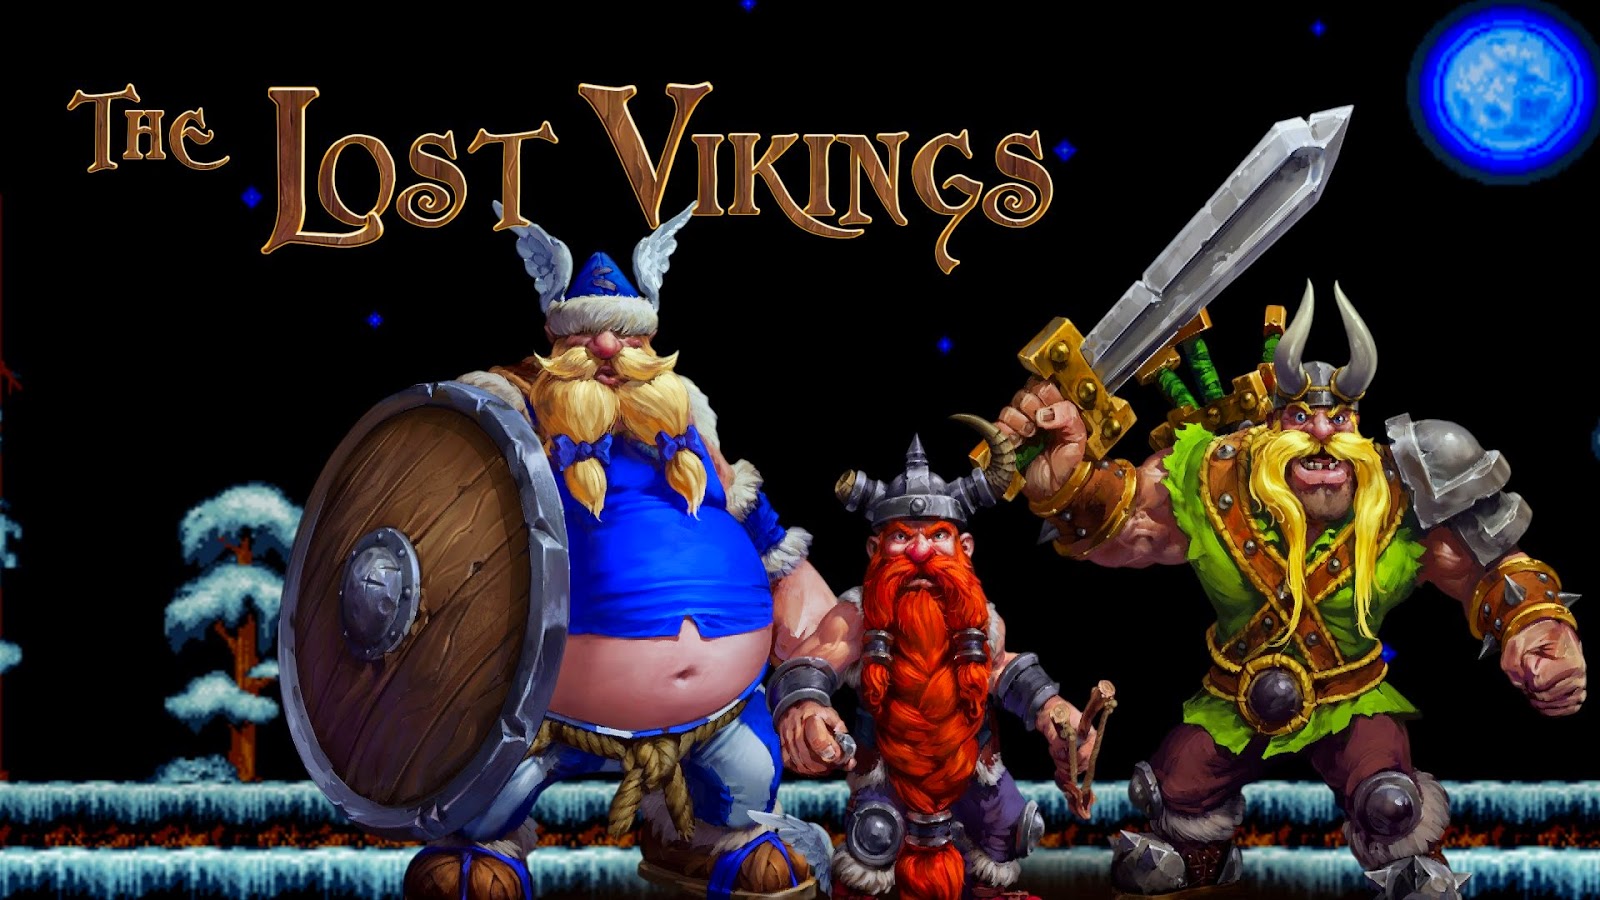 The Lost Vikings e como aprendemos a amar jogos multijogador com